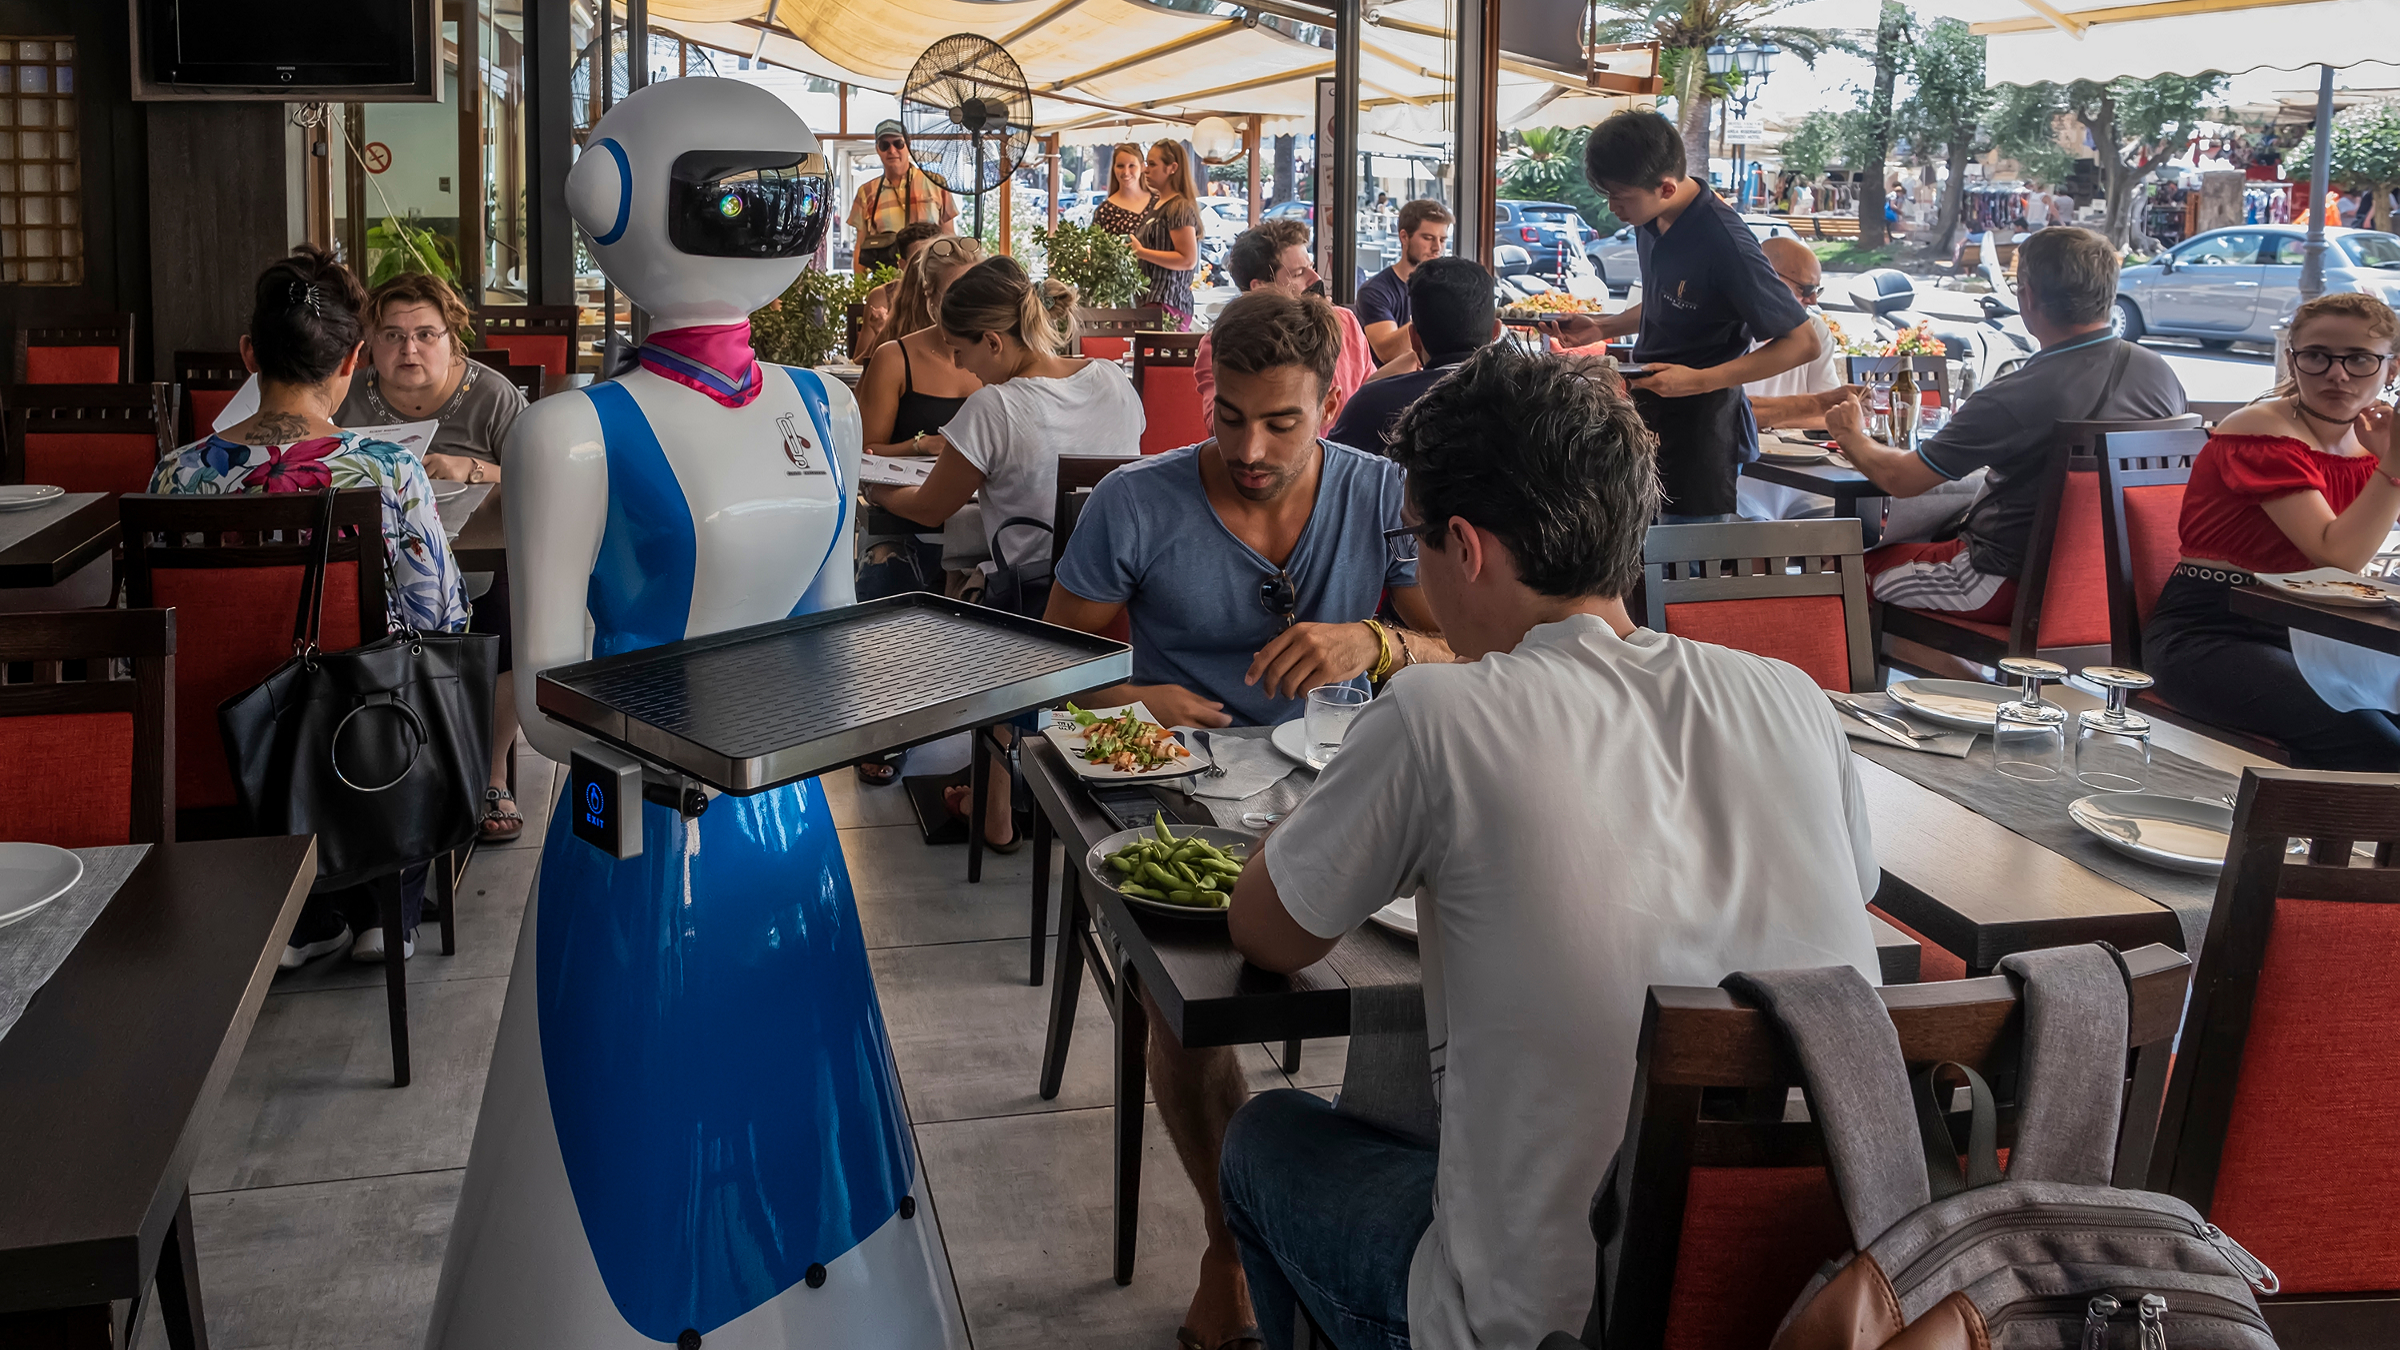 waiter robot on duty in Rapallo, Italy